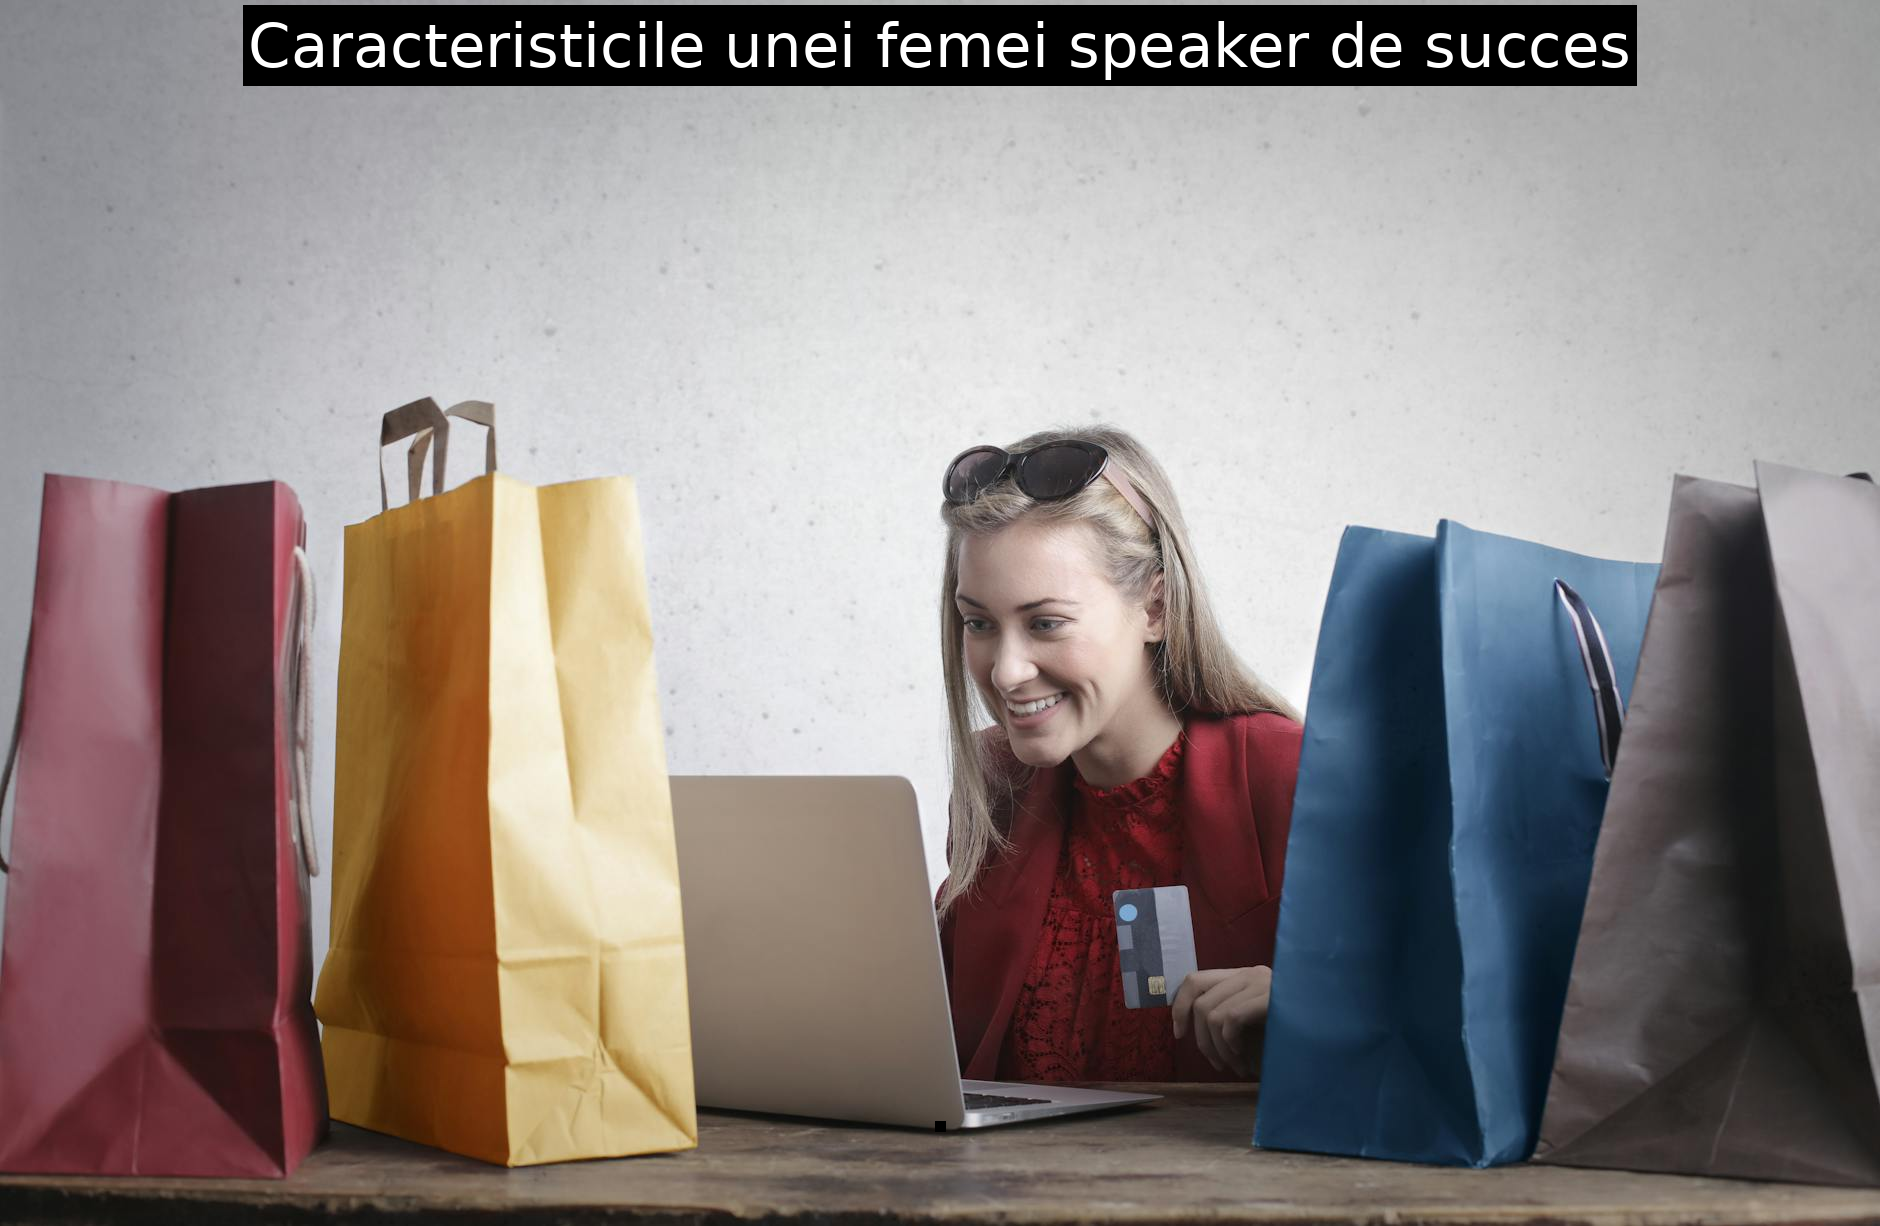 Caracteristicile unei femei speaker de succes